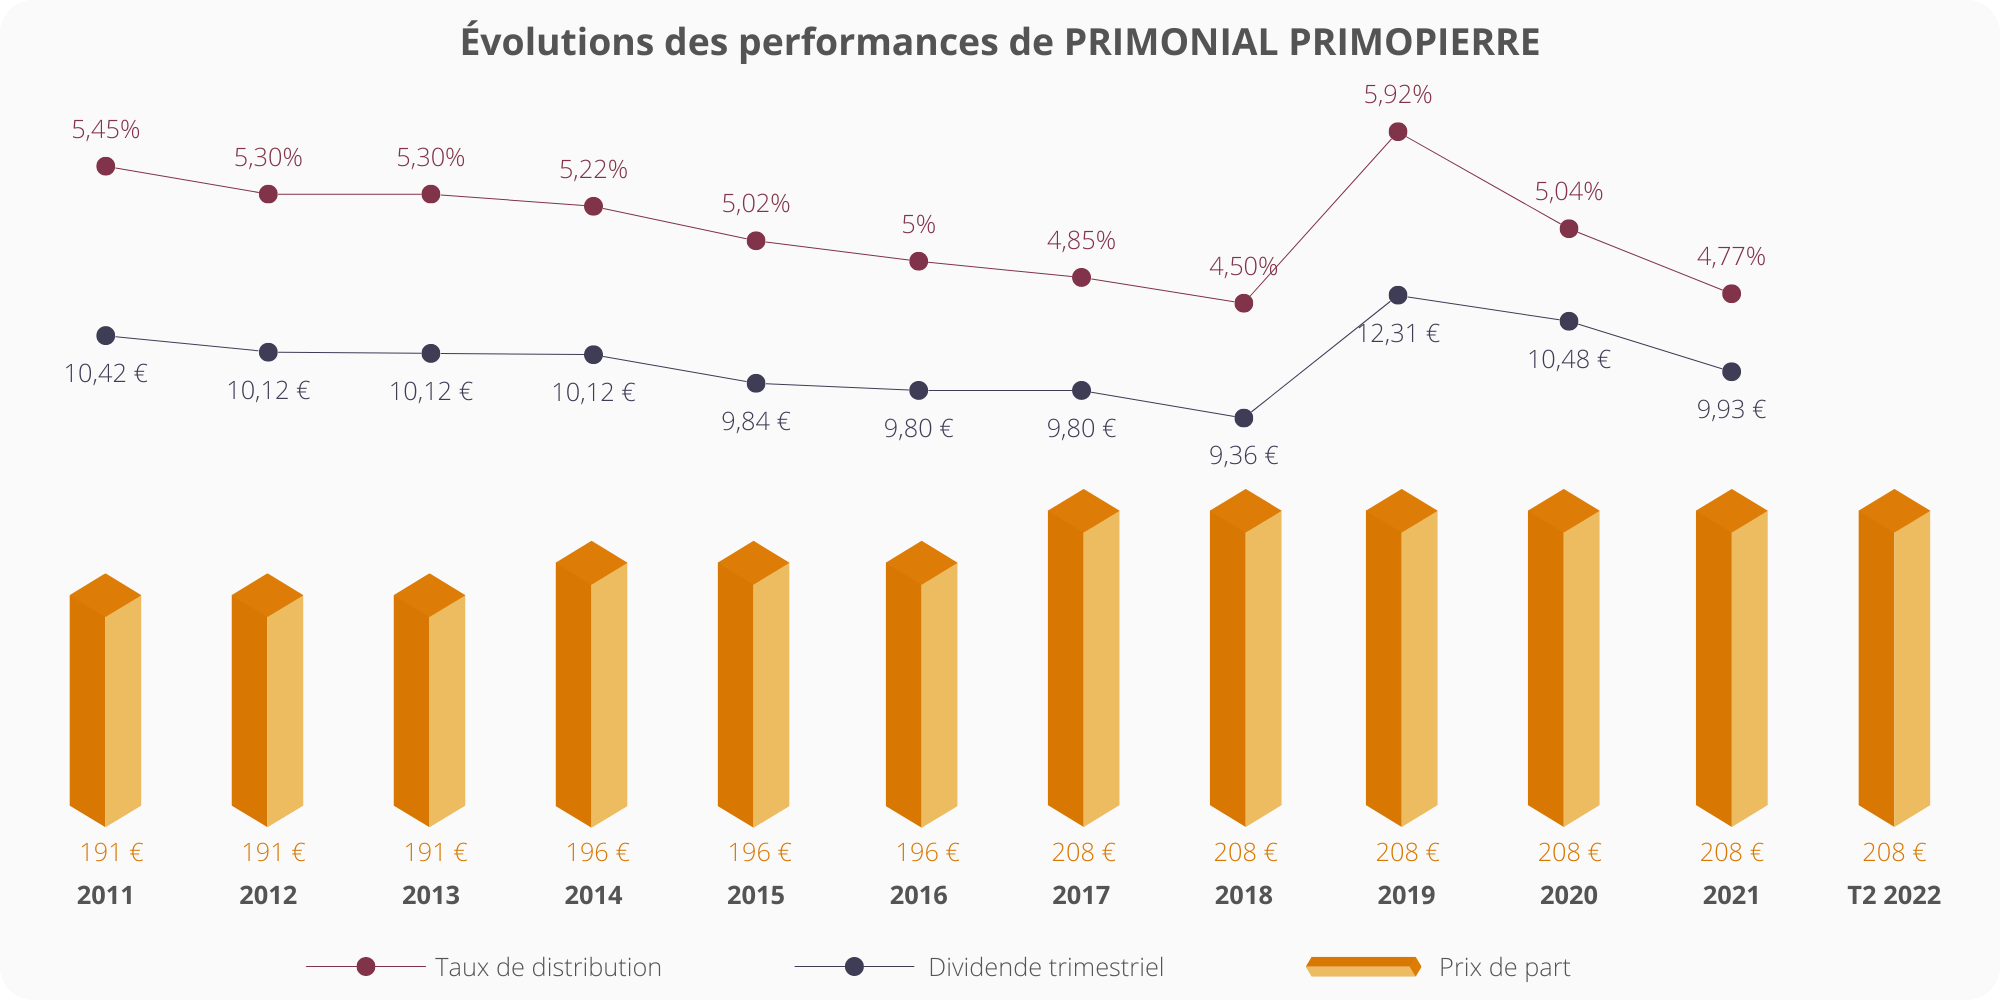 Évolutions des performances de Primonial Primopierre